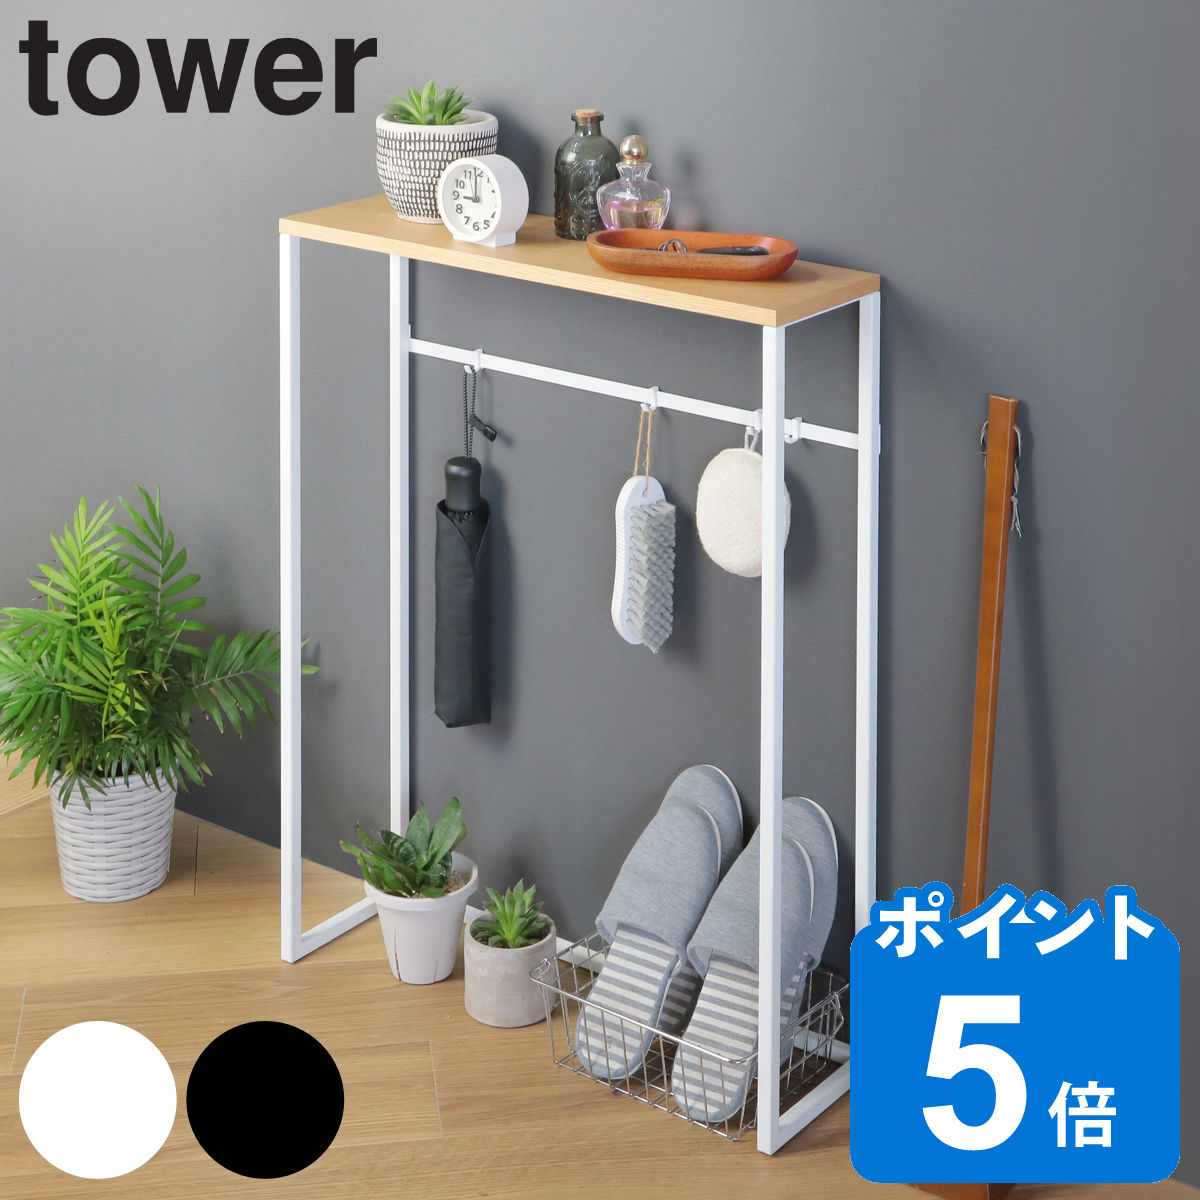 山崎実業 tower コンソールテーブル タワー